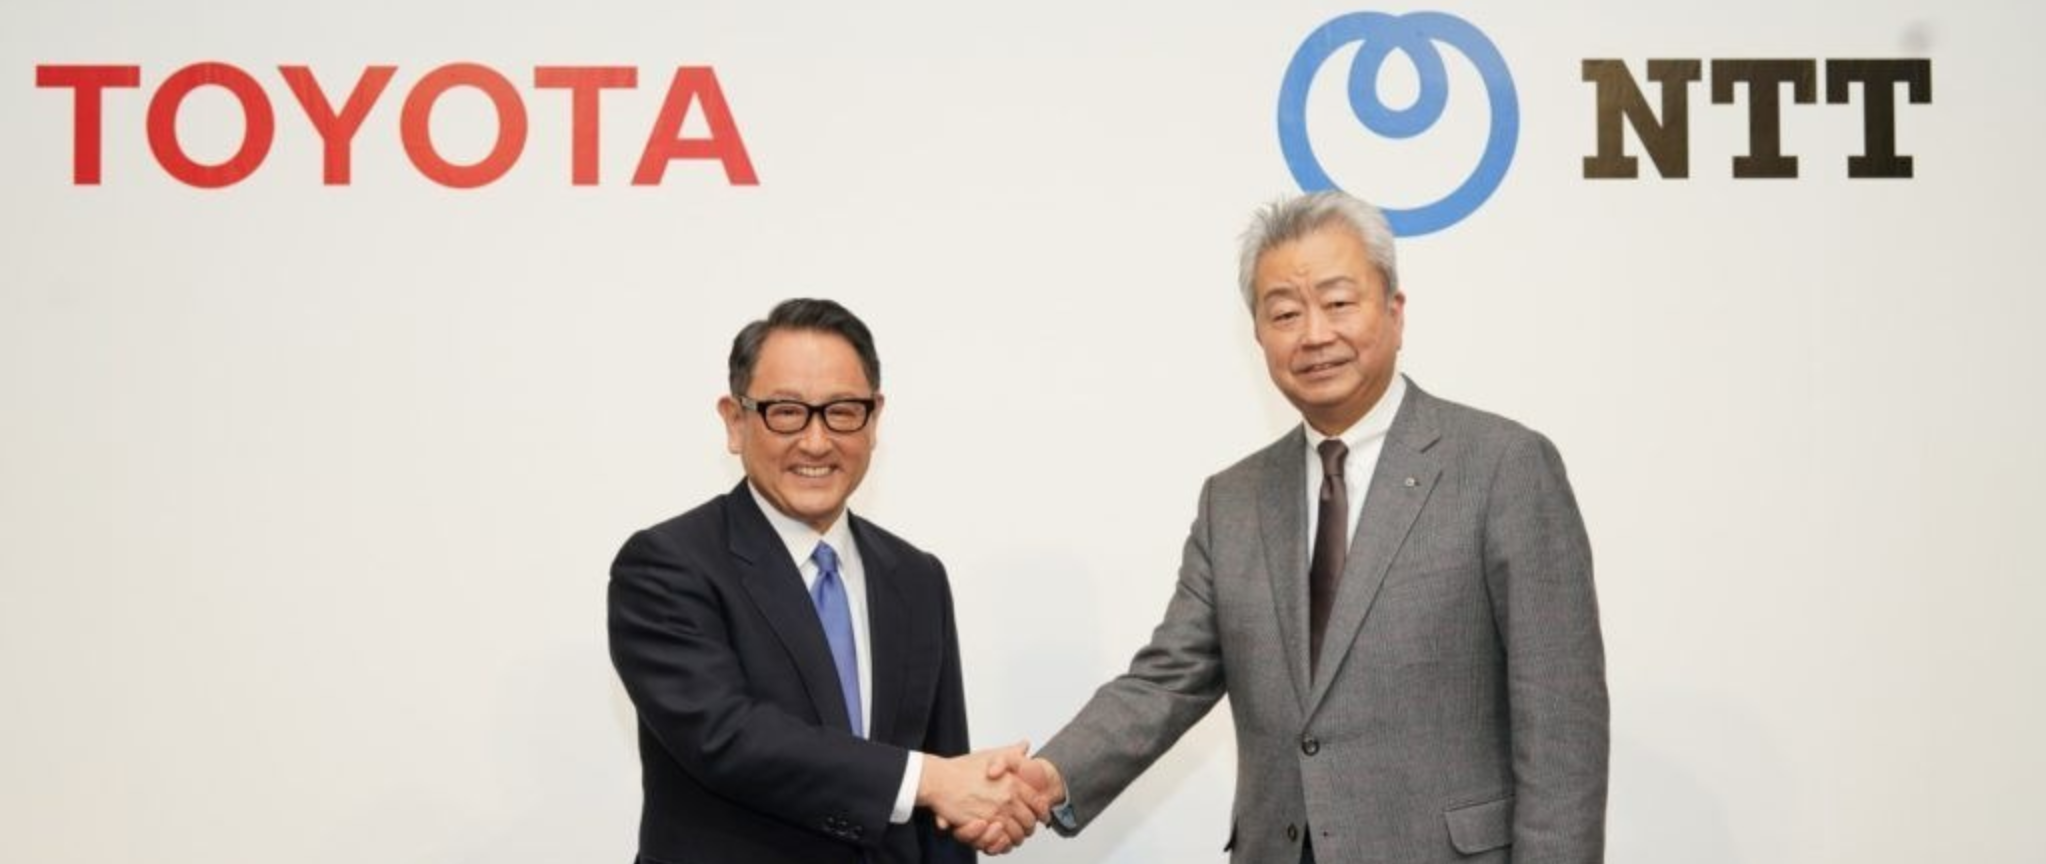 【独占】NTT澤田社長に聞く。トヨタと目指す「日本型」スマートシティ基盤とは